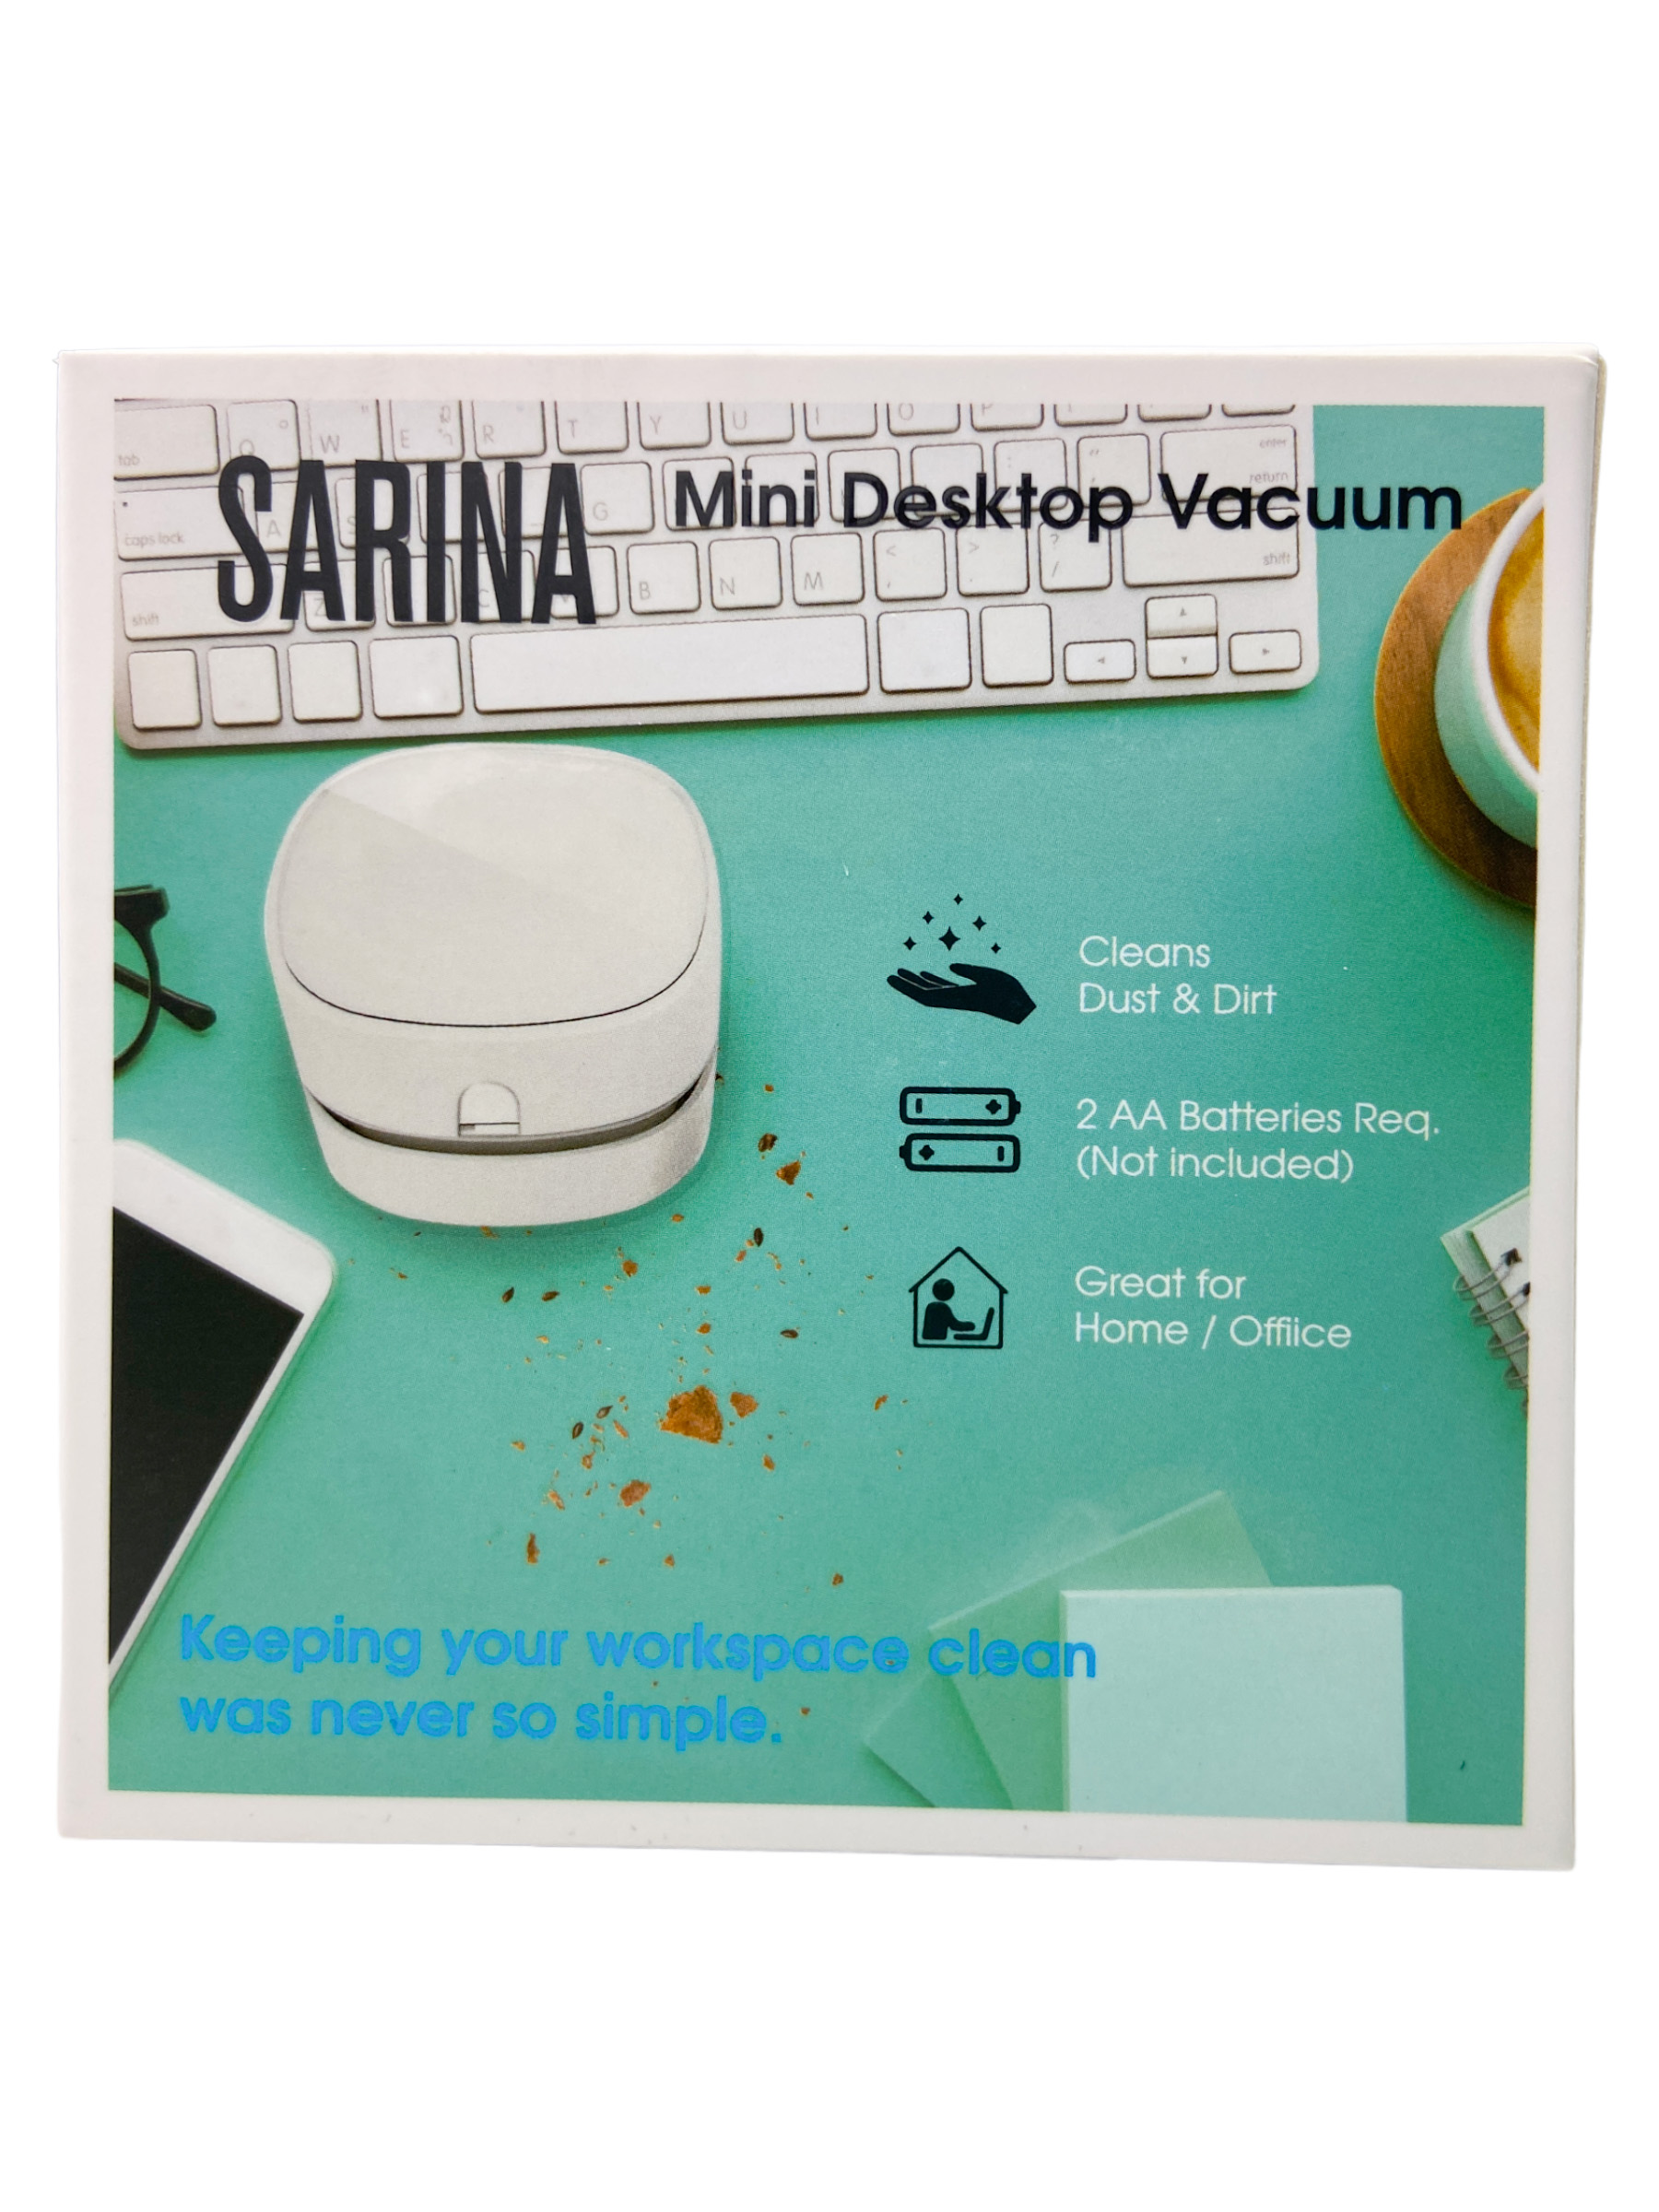 Sarina Mini Desktop Vacuum $7.